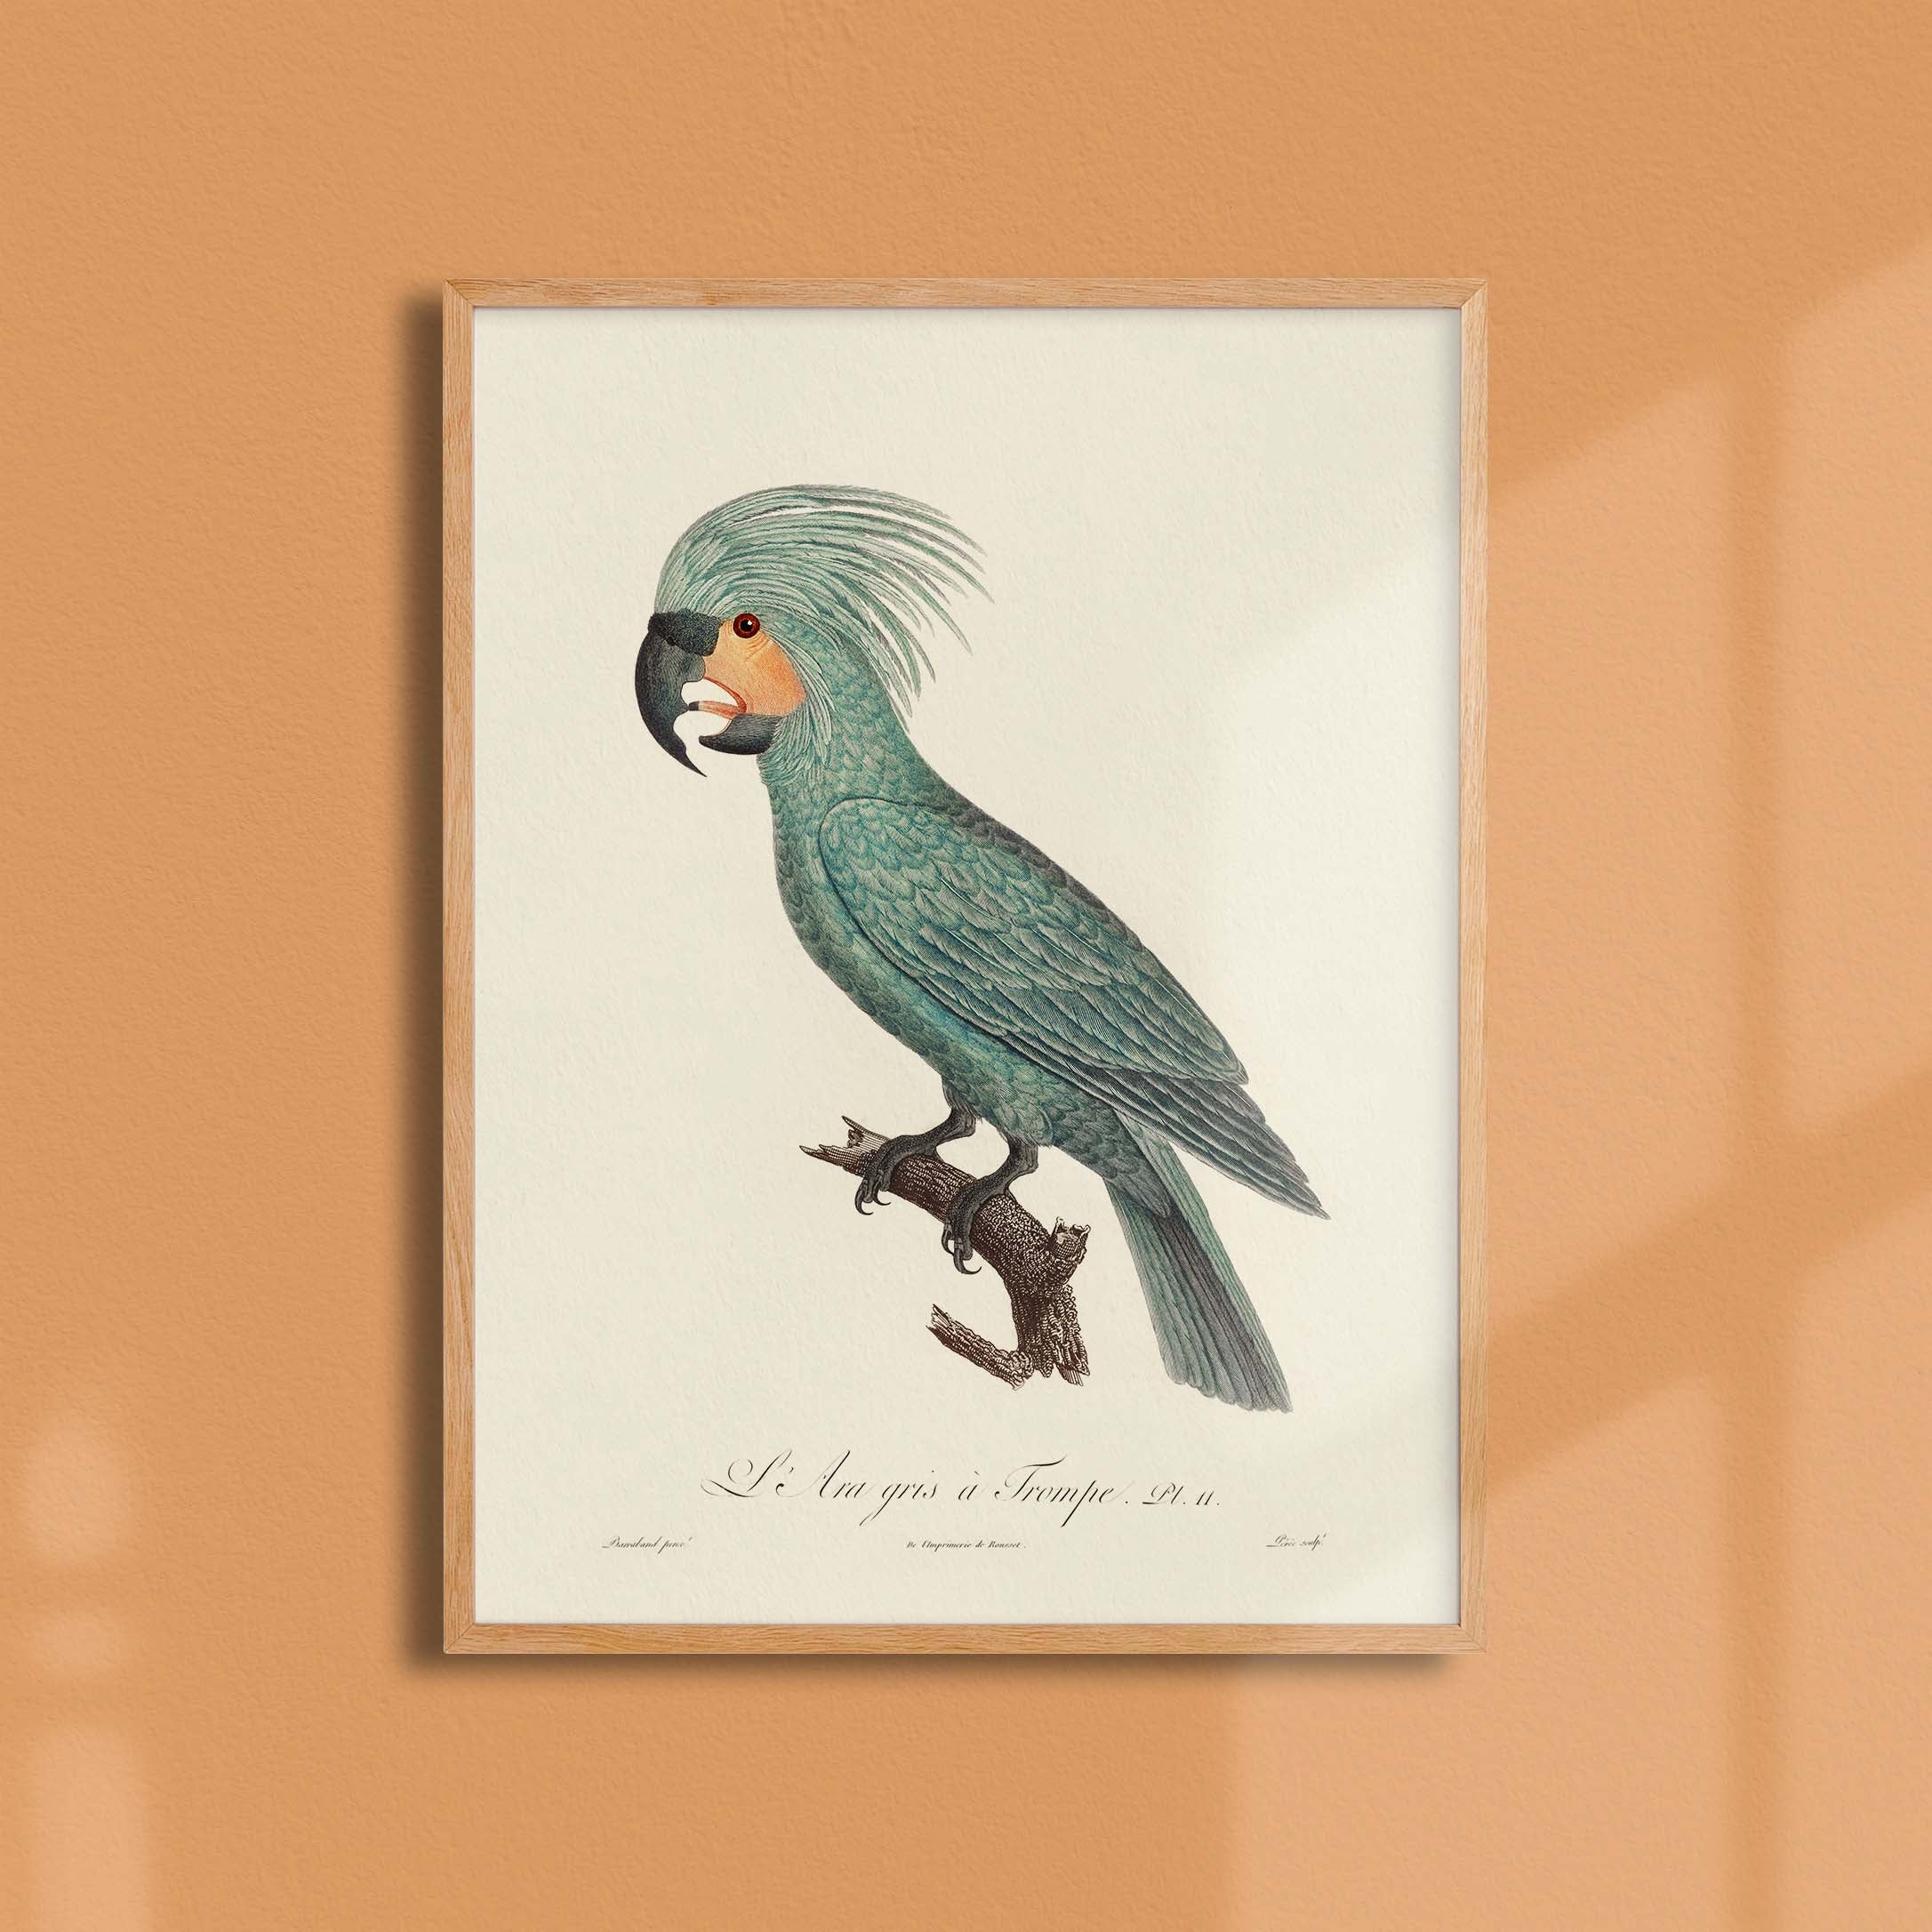 Planche d'ornithologie - L'Ara gris à trompe-oneart.fr